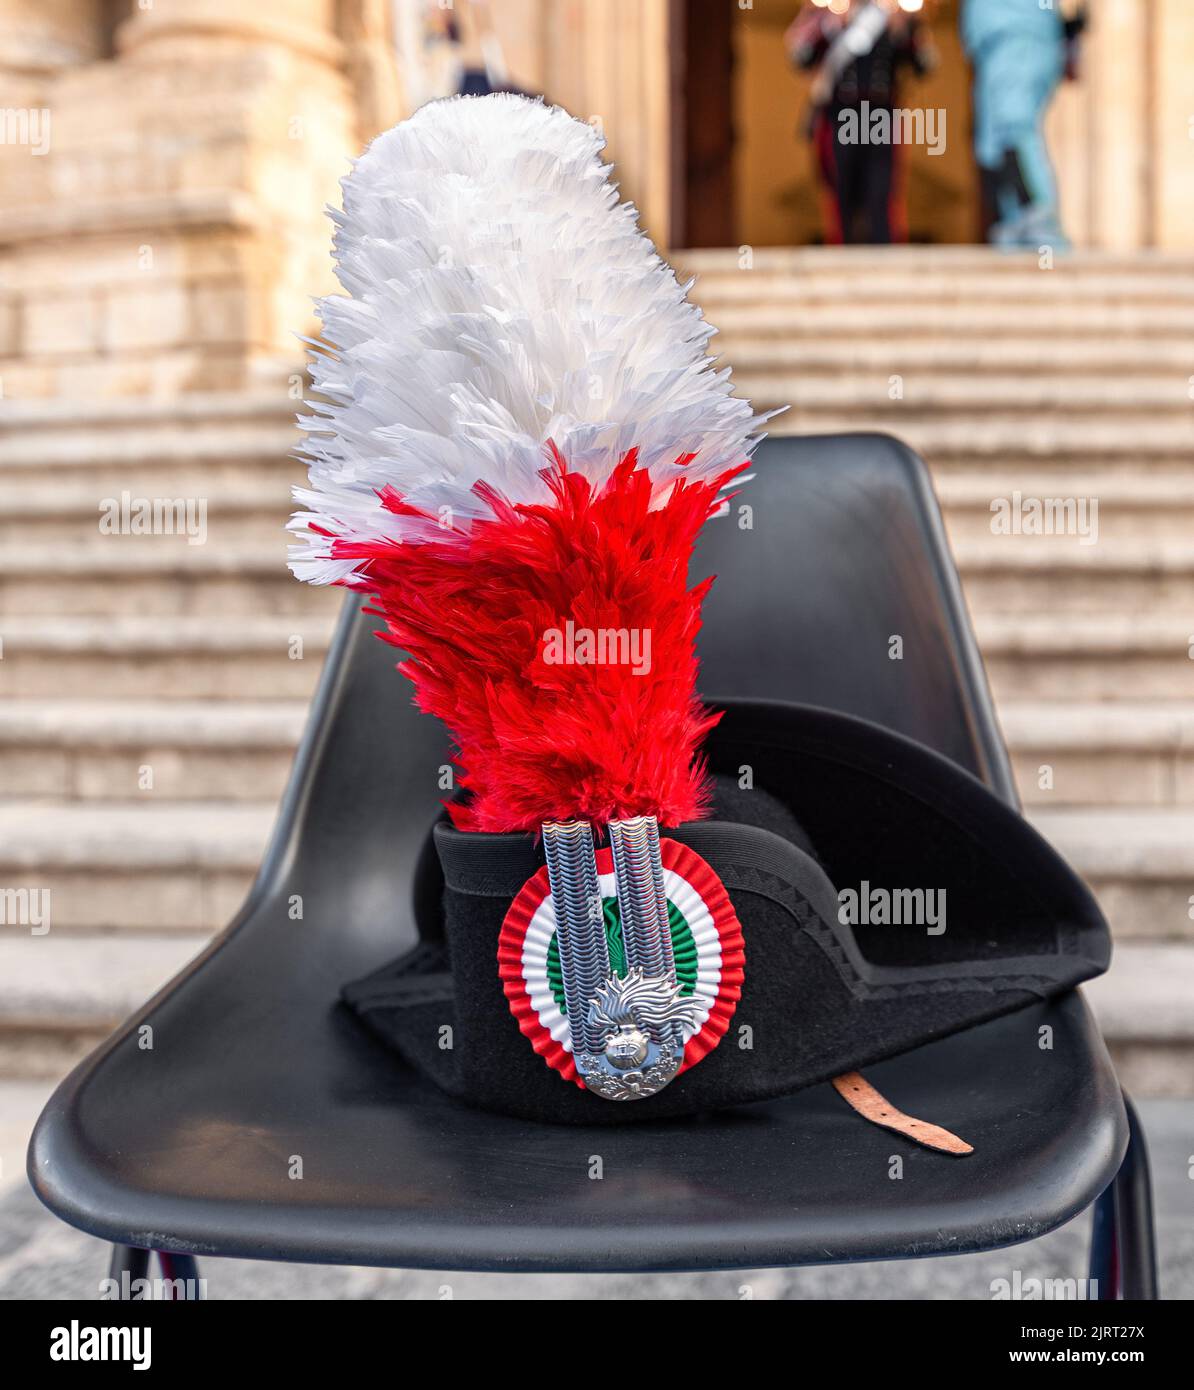 Grand chapeau de Carabinieri historique avec plume et ornements Banque D'Images